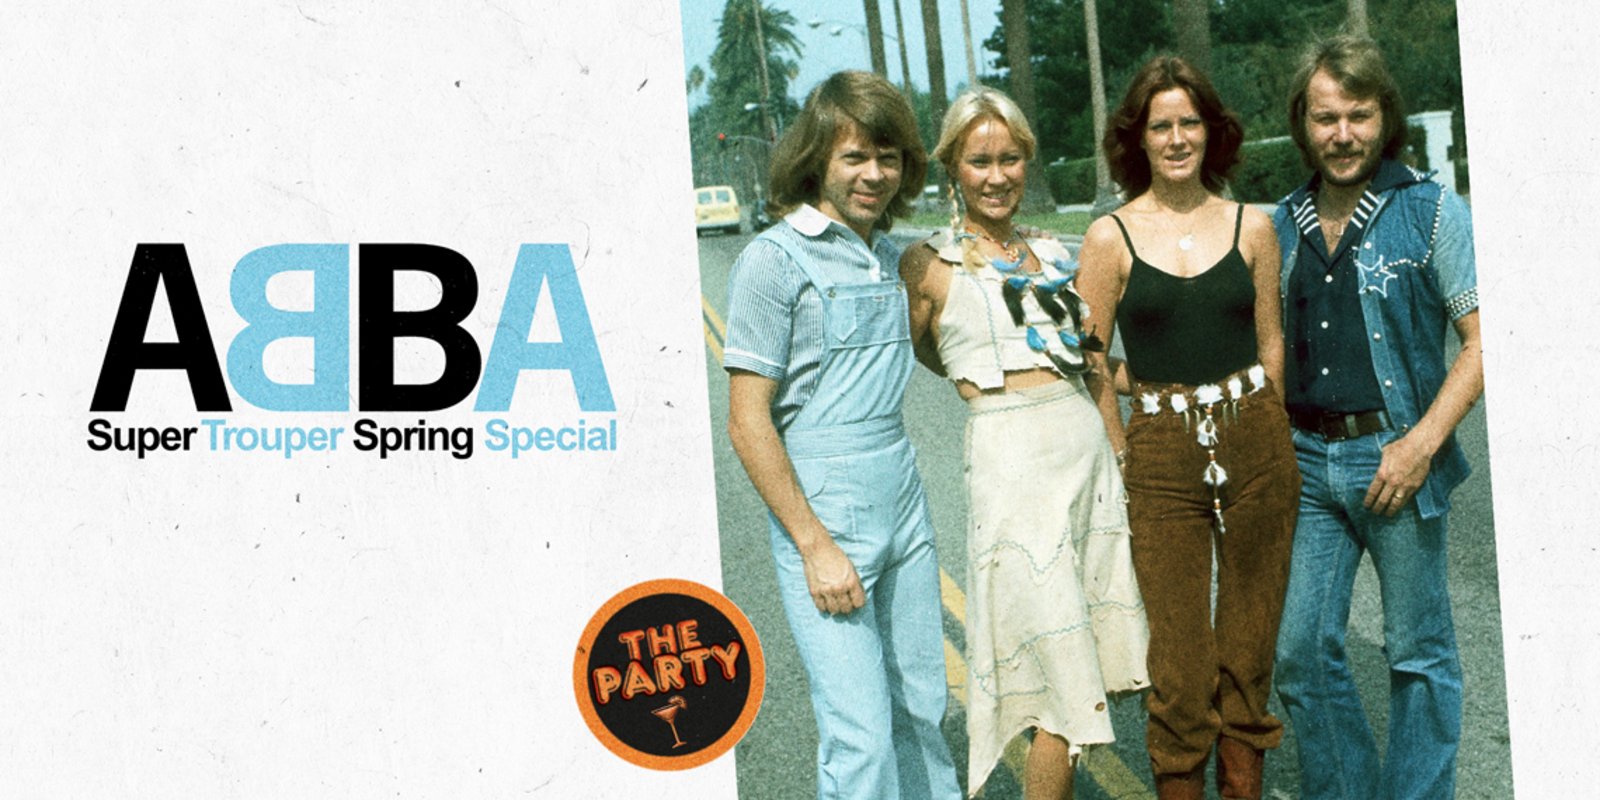 Vorschaubild zu: ABBA Super Trouper Spring Special